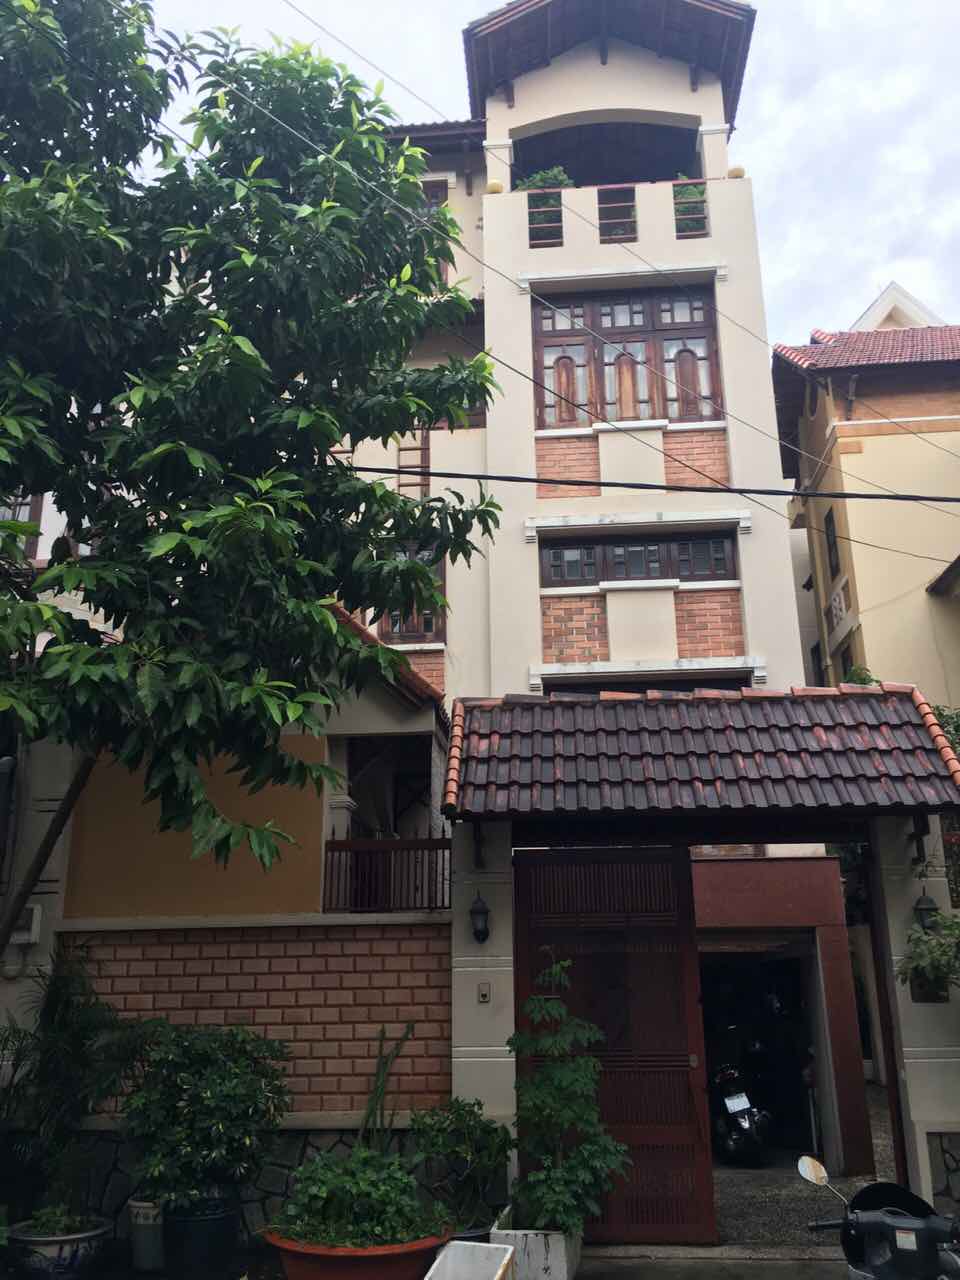 Bán nhà biệt thự, liền kề tại đường 20, Quận 2, Hồ Chí Minh. Diện tích 120m2